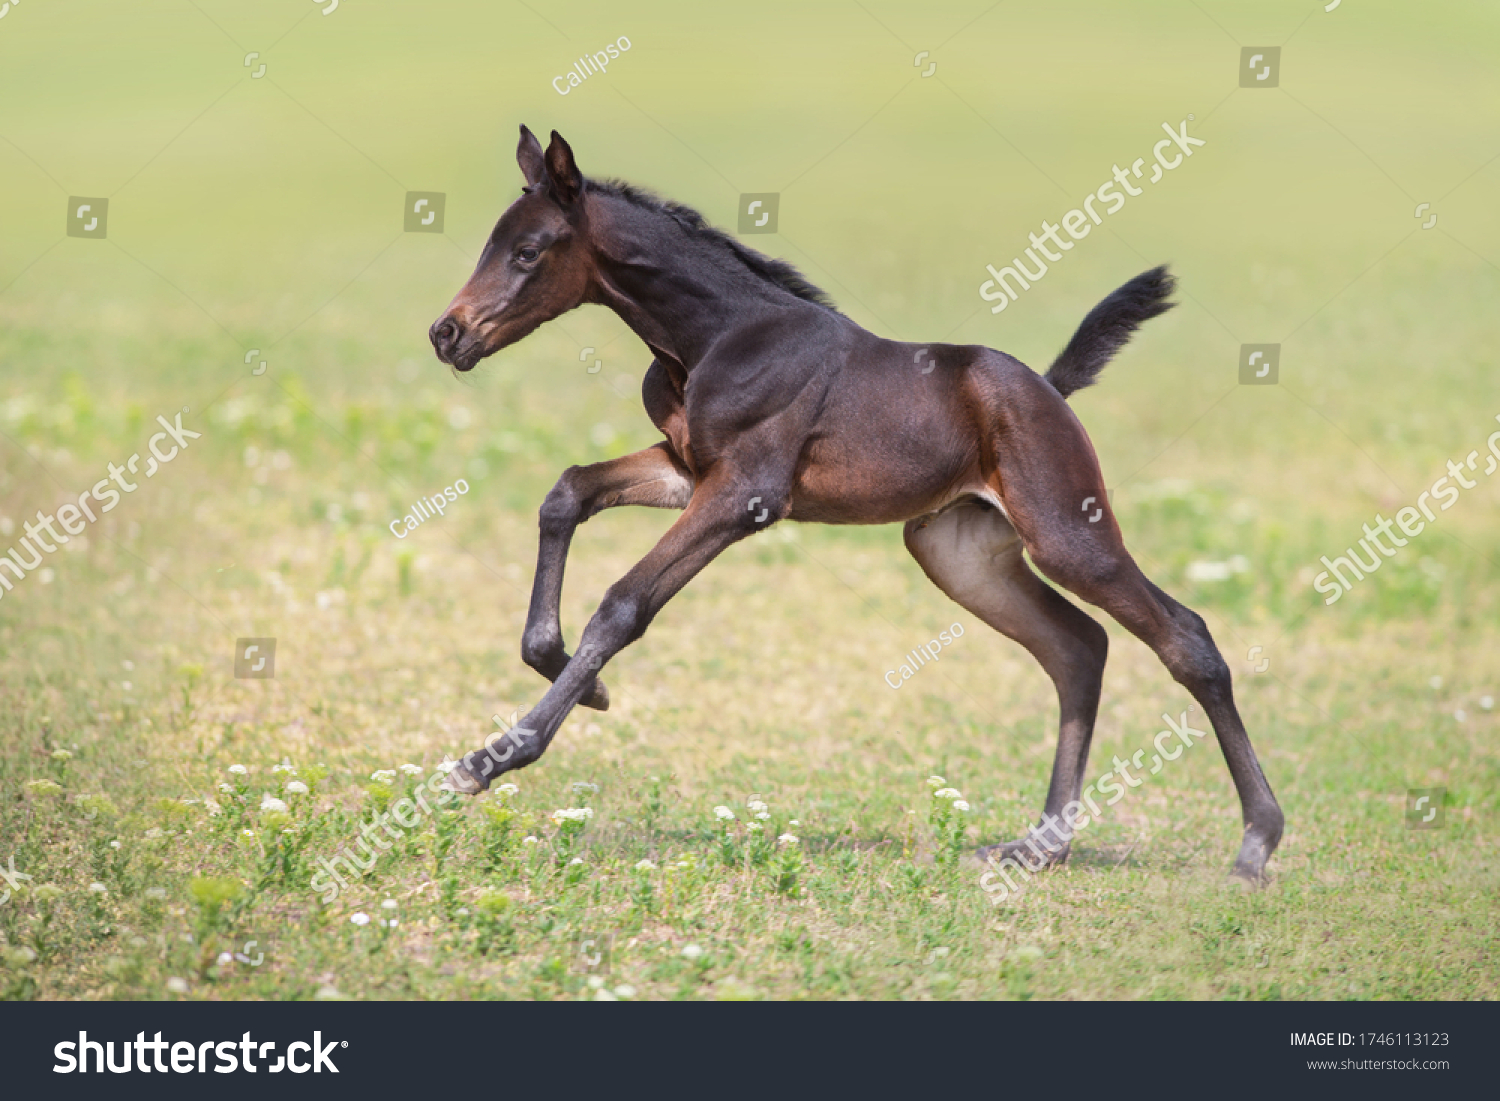 Bay foal run gallop on meadow #1746113123